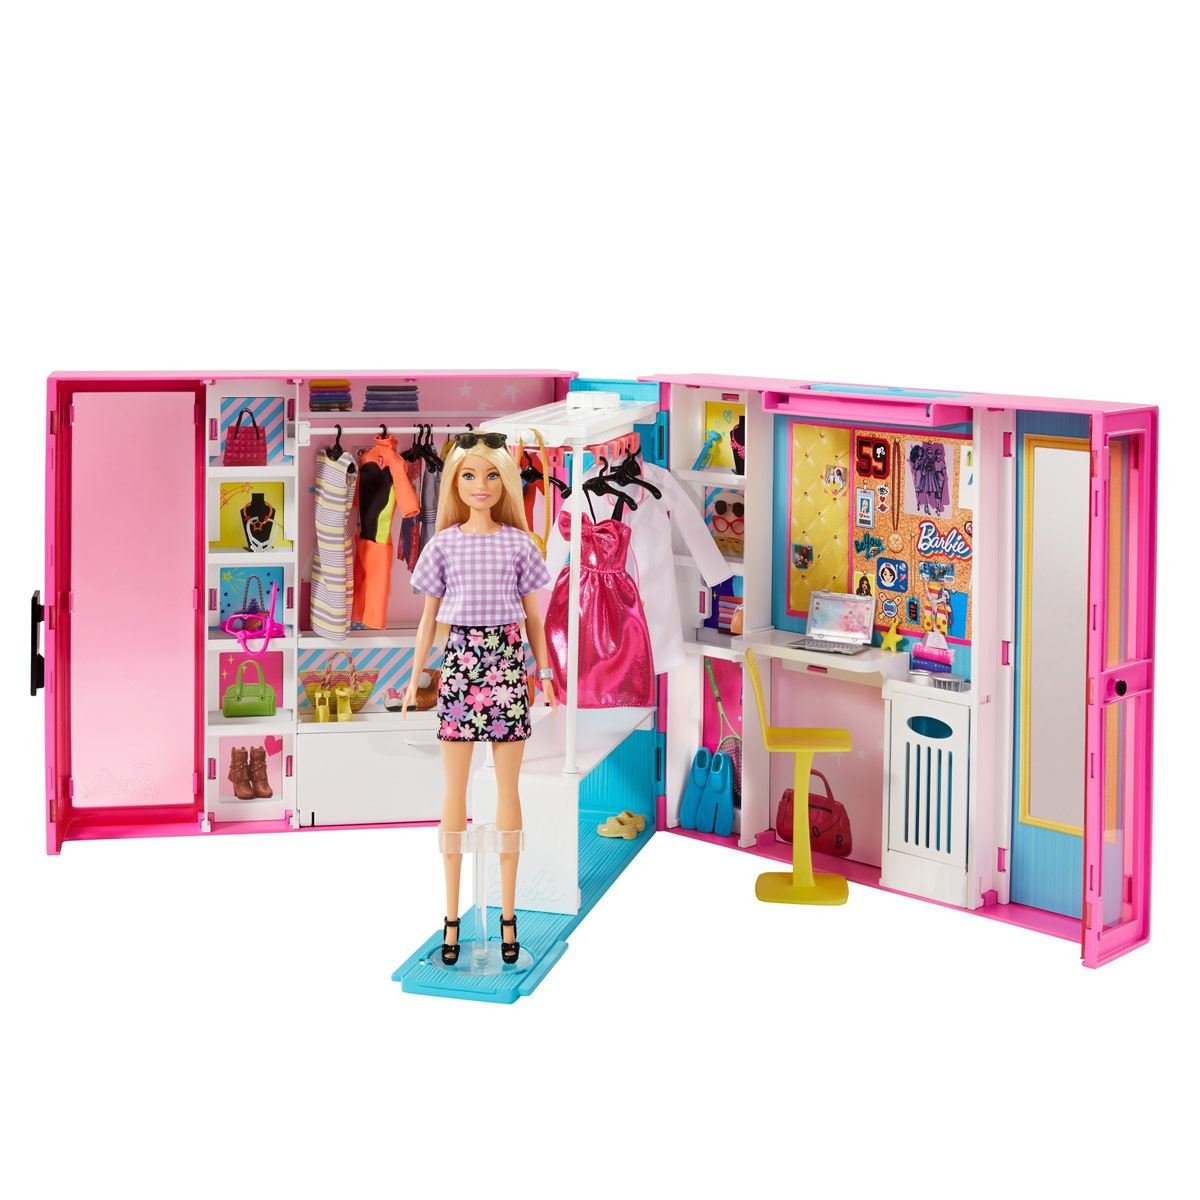 Moda sabor dulce Cargado Barbie Fashionista Ropa y Accesorios para Muñeca Closet de Ensueño